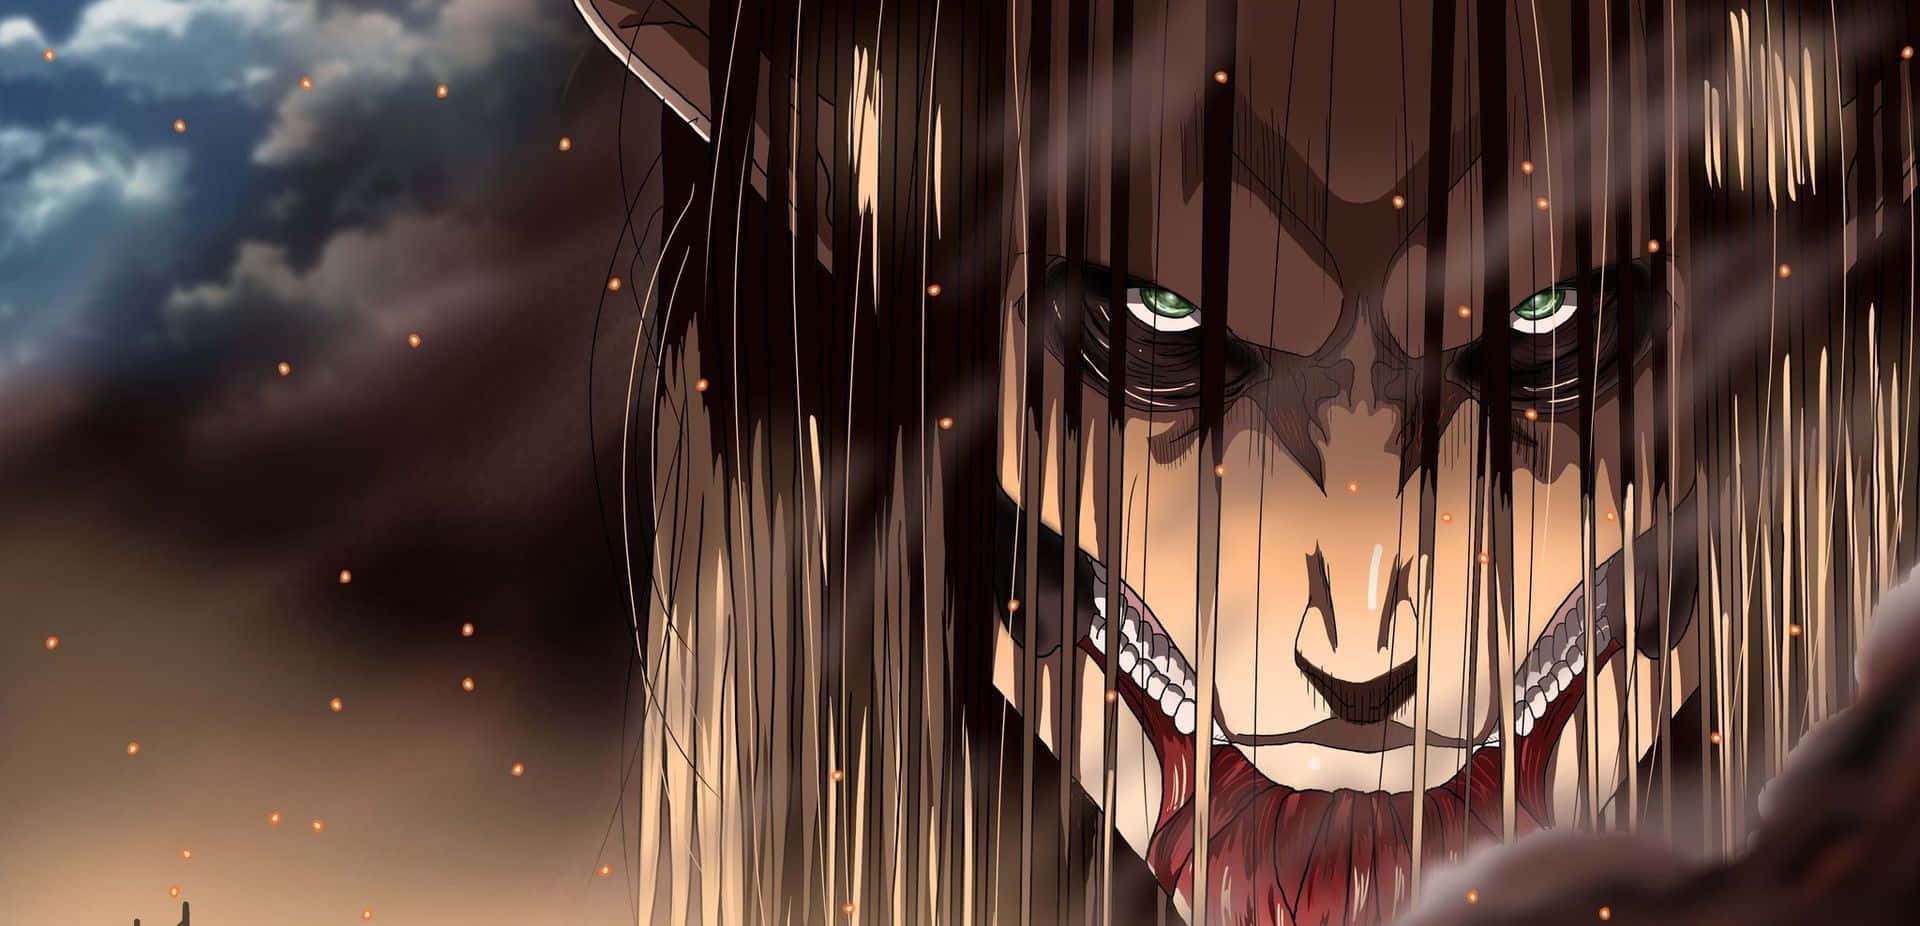 Eren Founding Titan  Manga VS Anime  Attack On Titan Season 4 Part 2  Episode 12  Bilibili